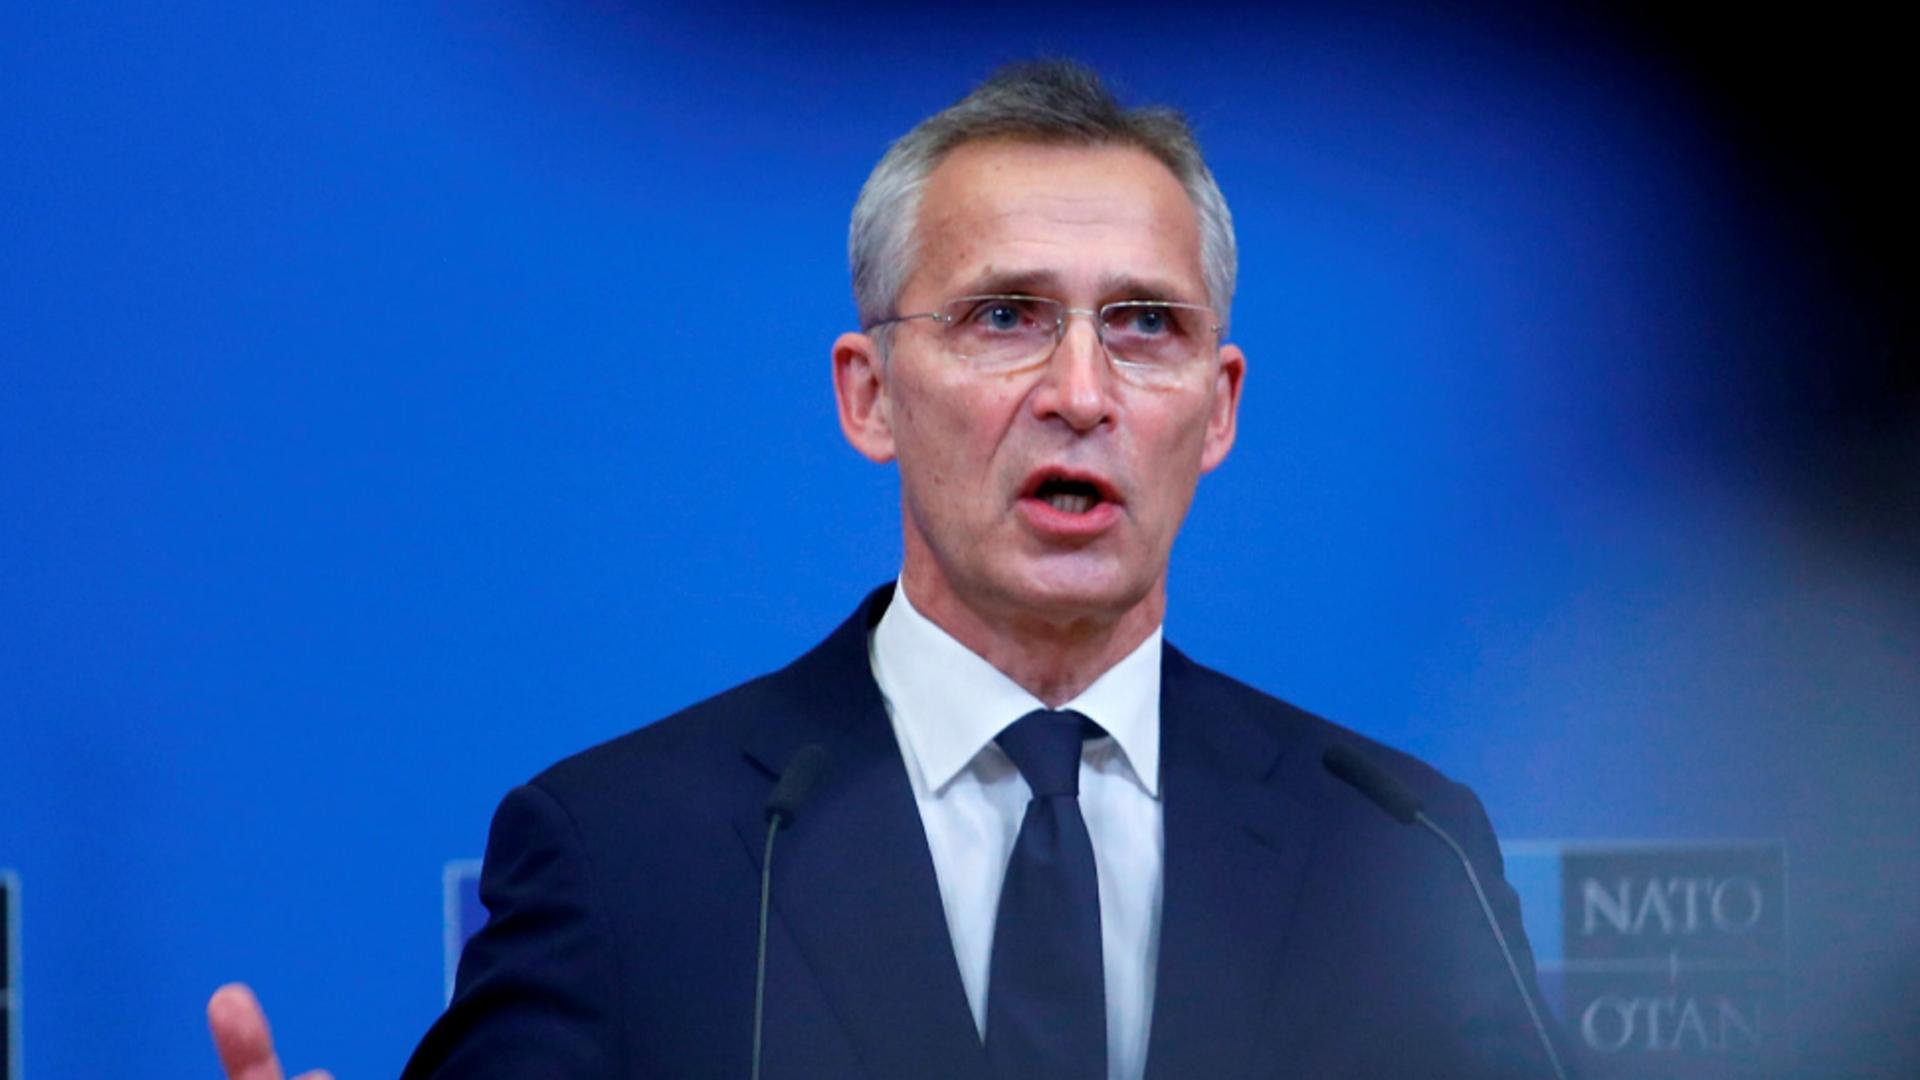 Șeful NATO cere Europei să crească producția de arme! Un conflict între aliații occidentali și Rusia ar putea dura zeci de ani